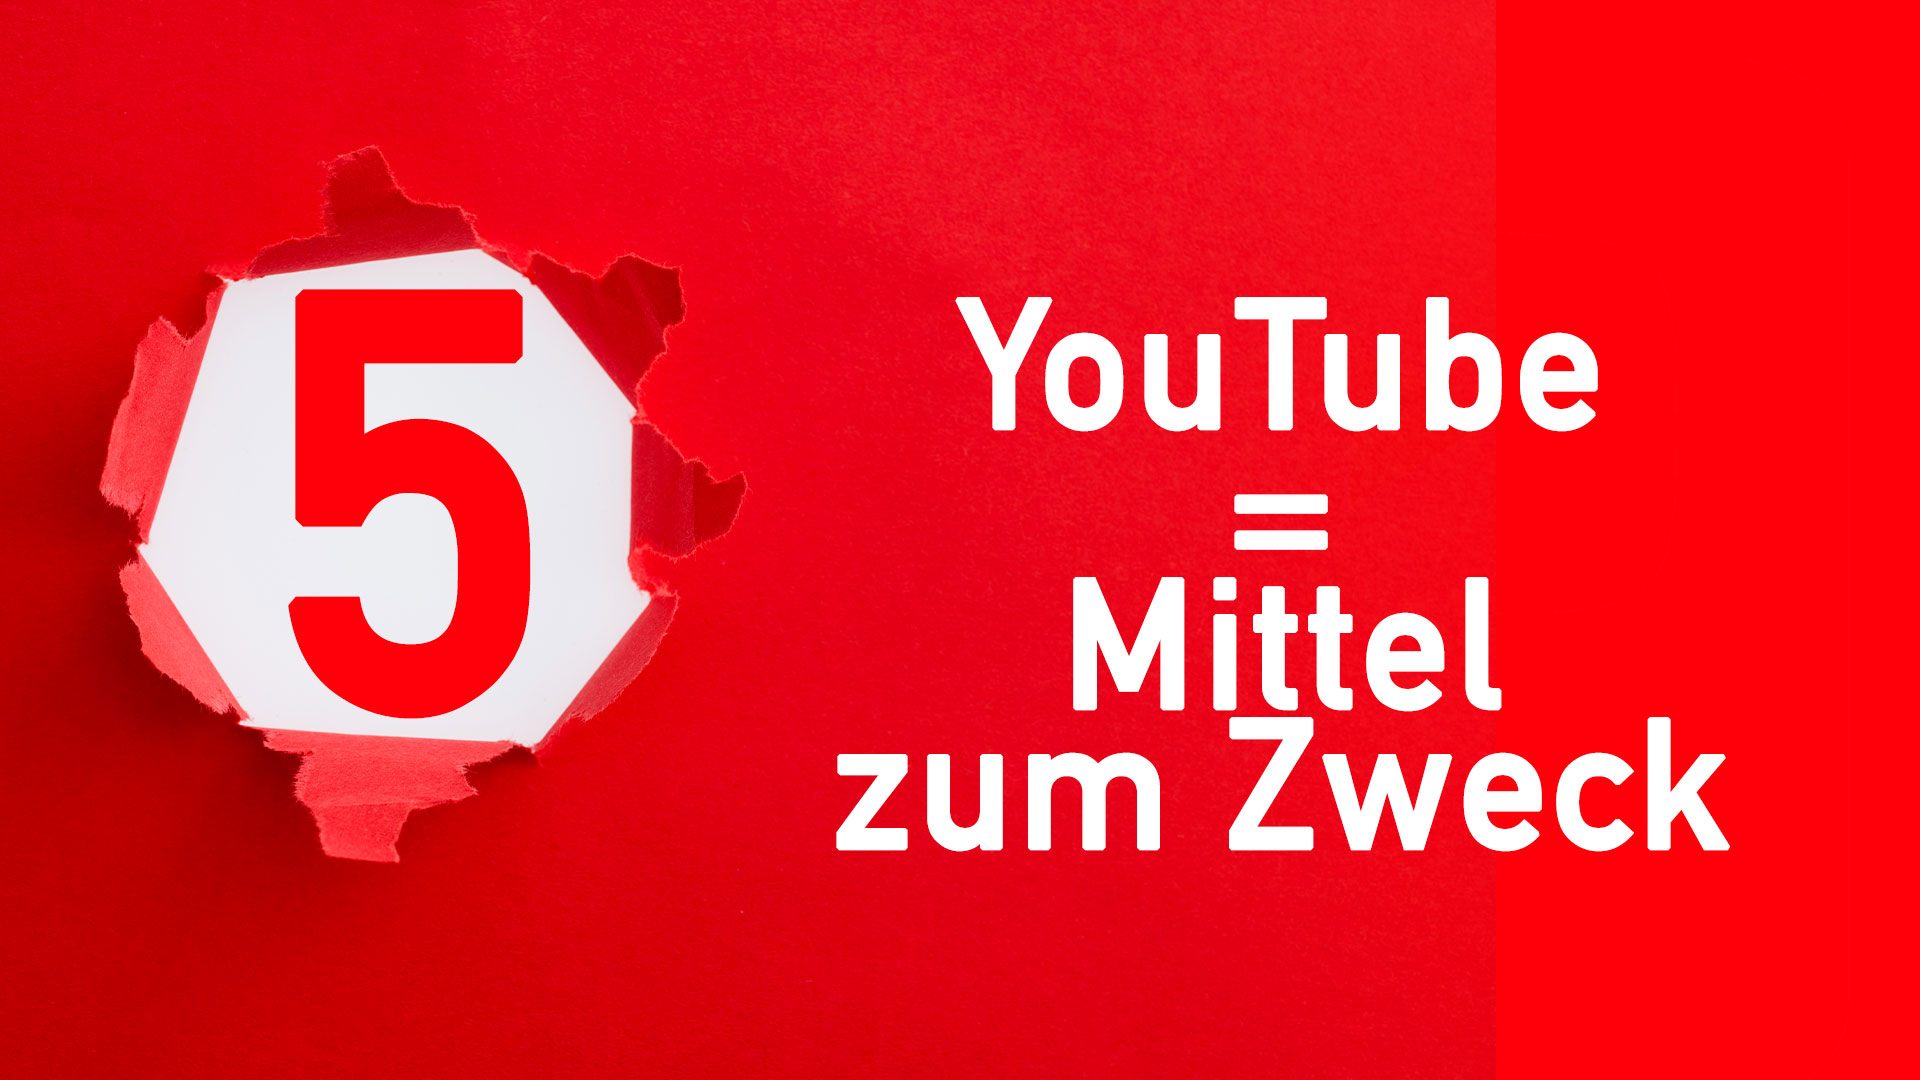 YouTube Videostrategie 5: YouTube = Mittel zum Zweck.